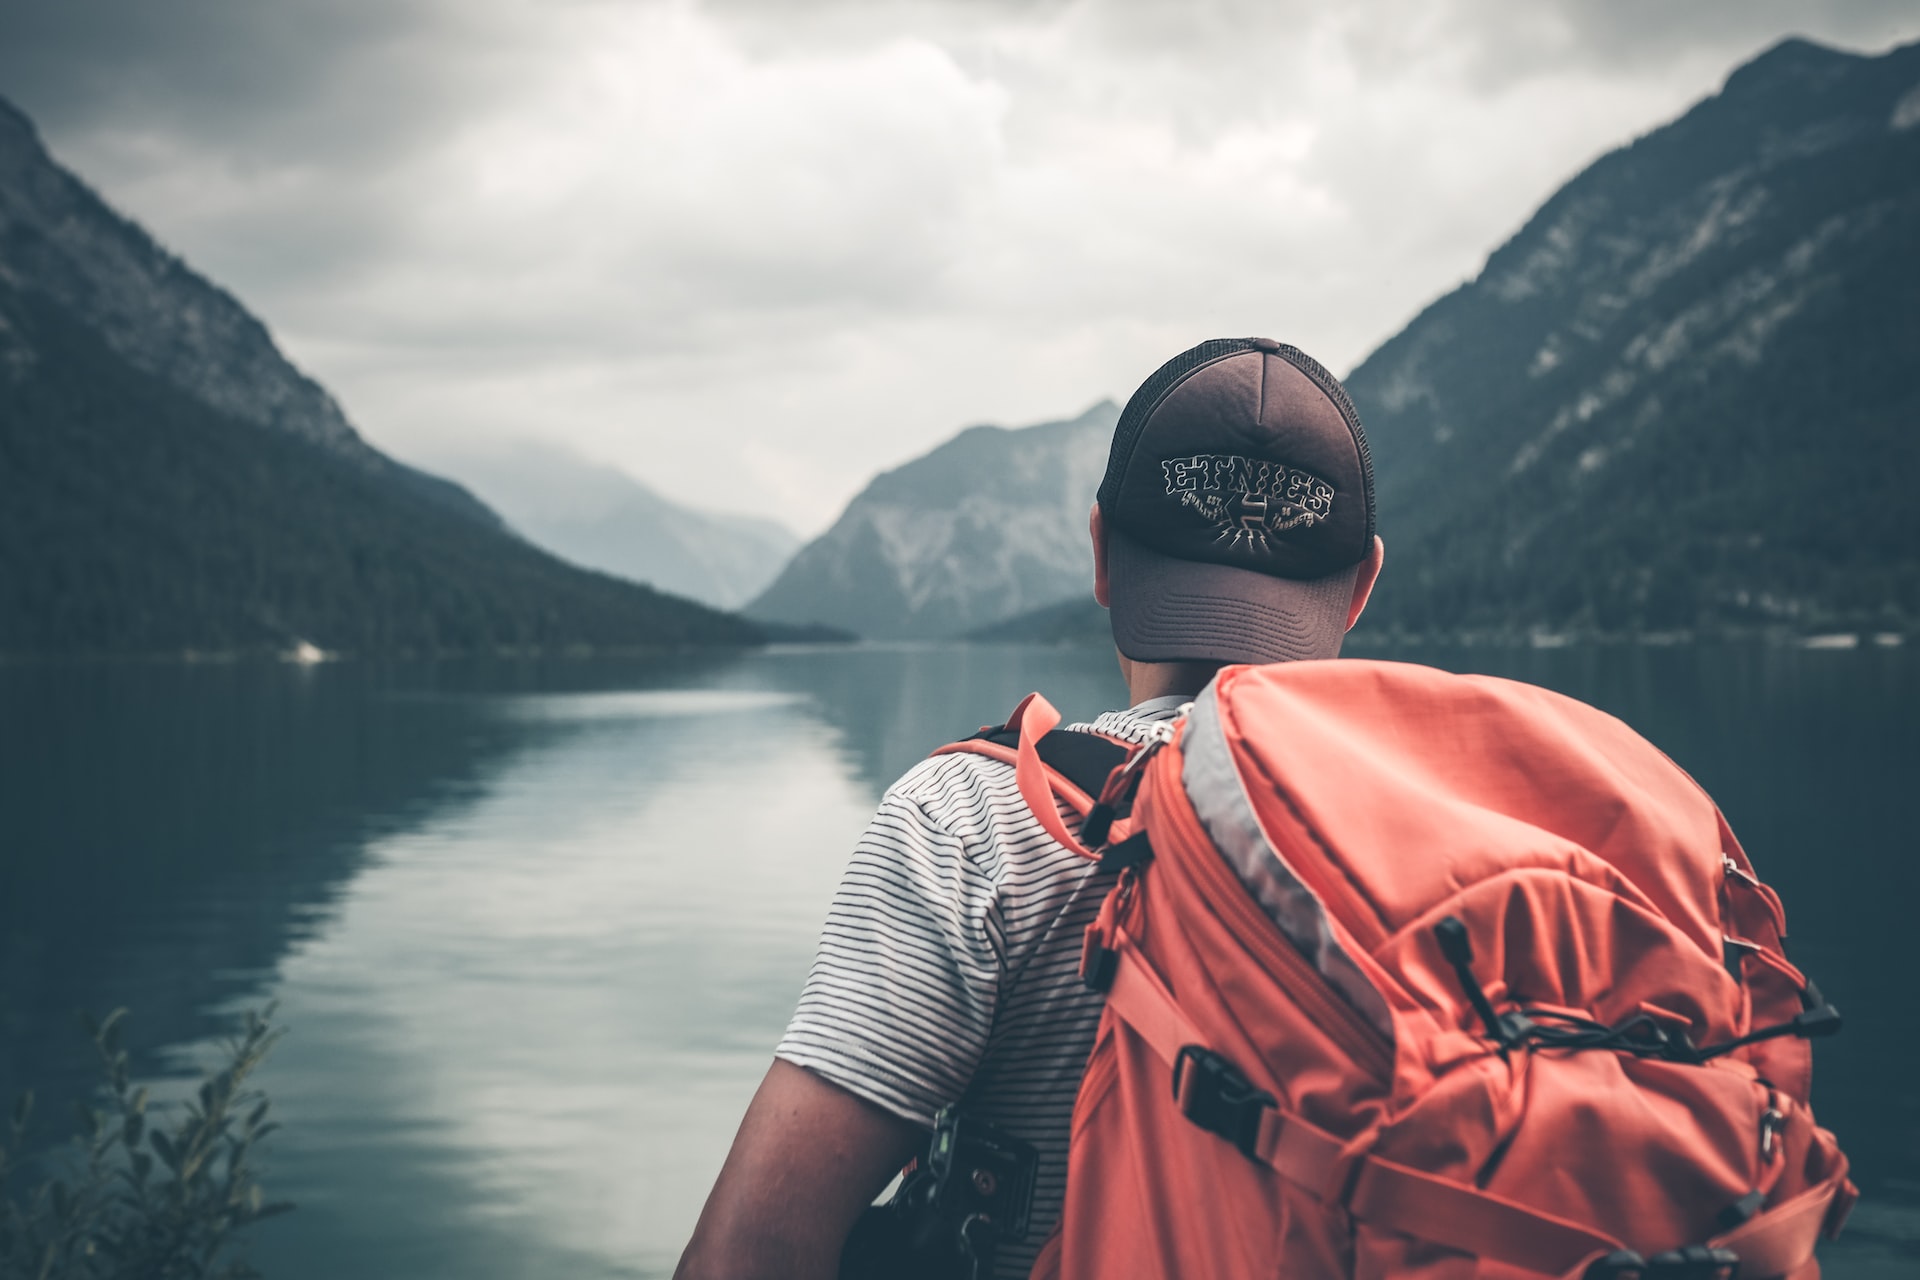 Homem, de costas, com boné virado para trás, e mochila nas costas, olhando paisagem de lago em dia nublado, para ilustrar a capa do post de cupom de desconto seguro viagem